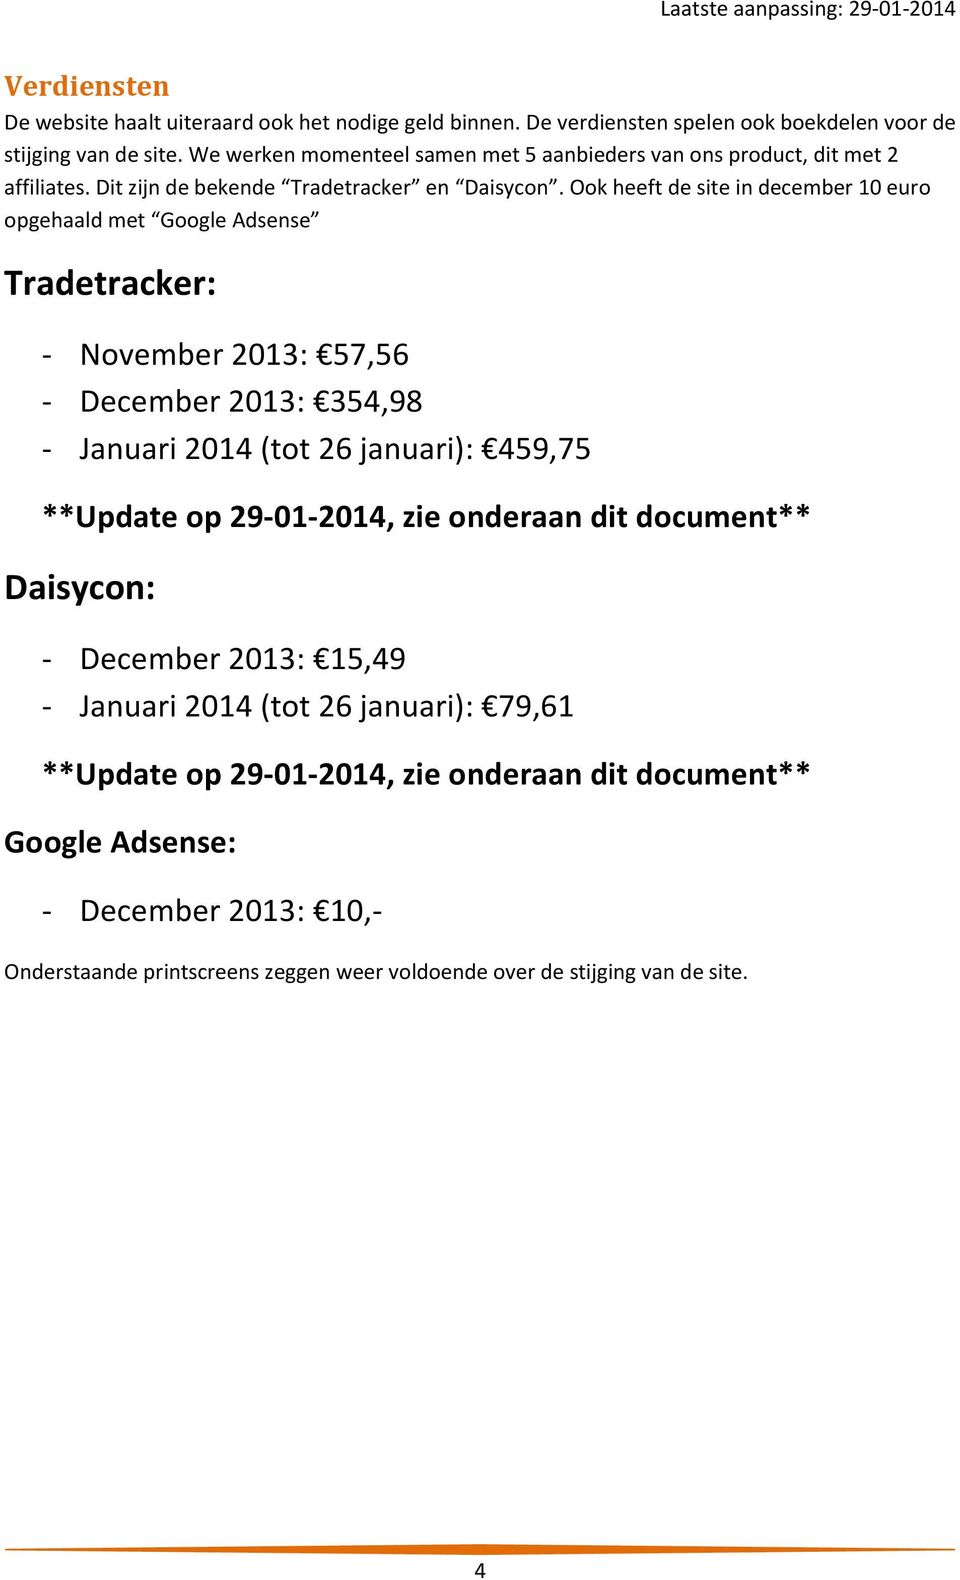 Ook heeft de site in december 10 euro opgehaald met Google Adsense Tradetracker: - November 2013: 57,56 - December 2013: 354,98 - Januari 2014 (tot 26 januari): 459,75 **Update op